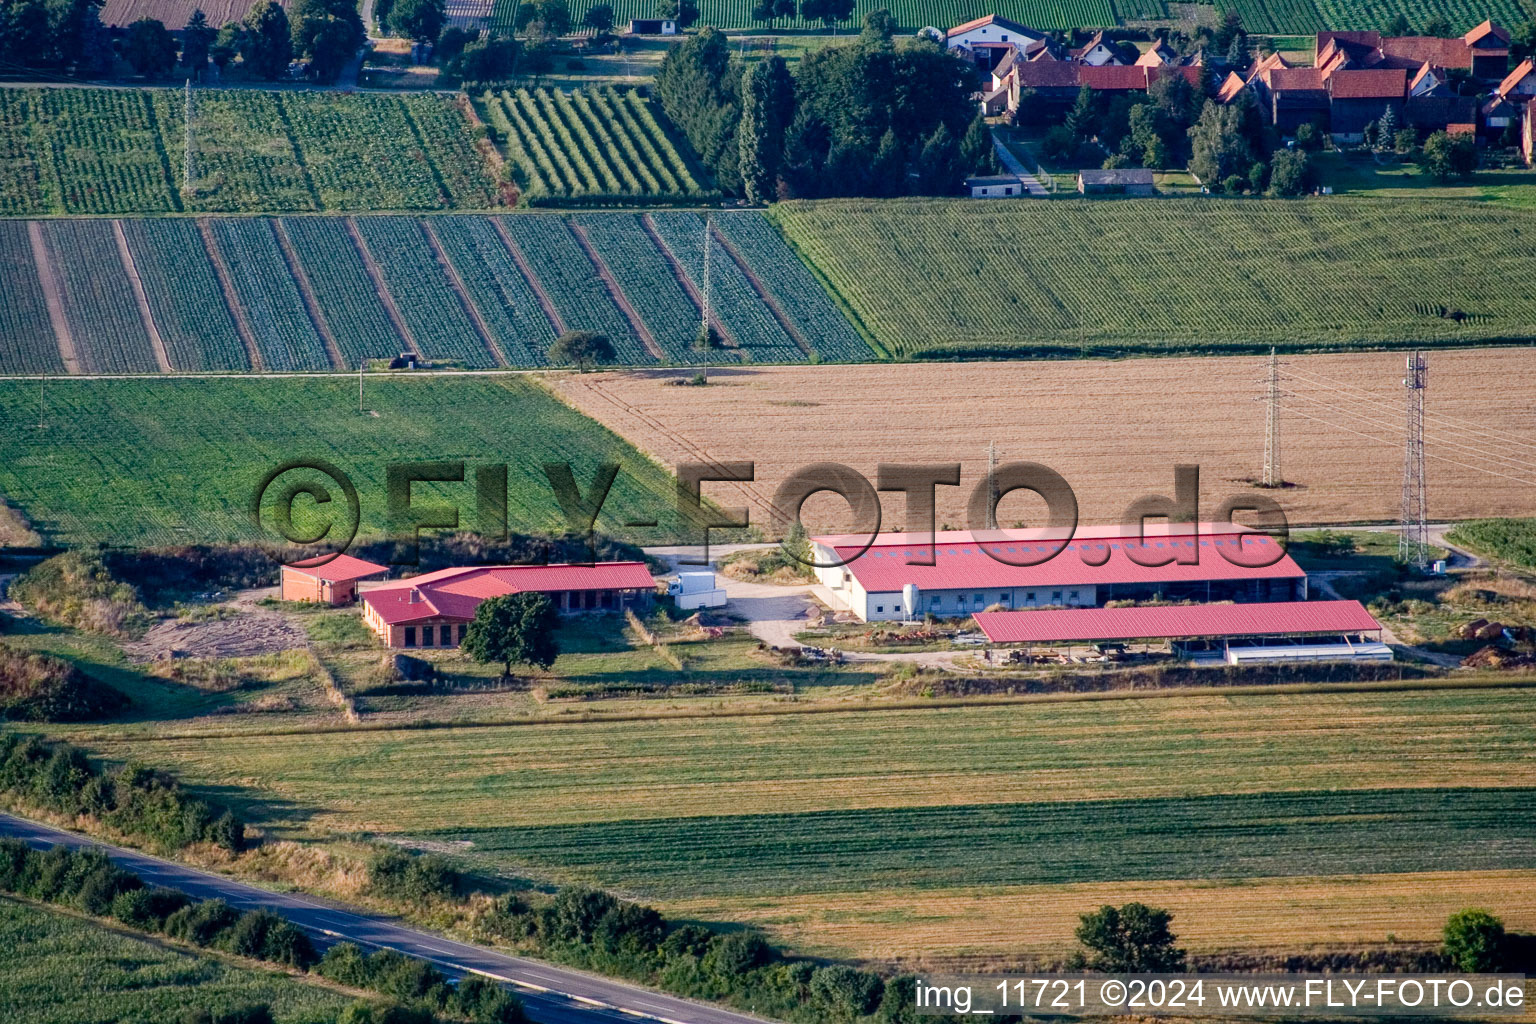 Luftbild von Hühnerhof Eierfarm in Erlenbach bei Kandel im Bundesland Rheinland-Pfalz, Deutschland